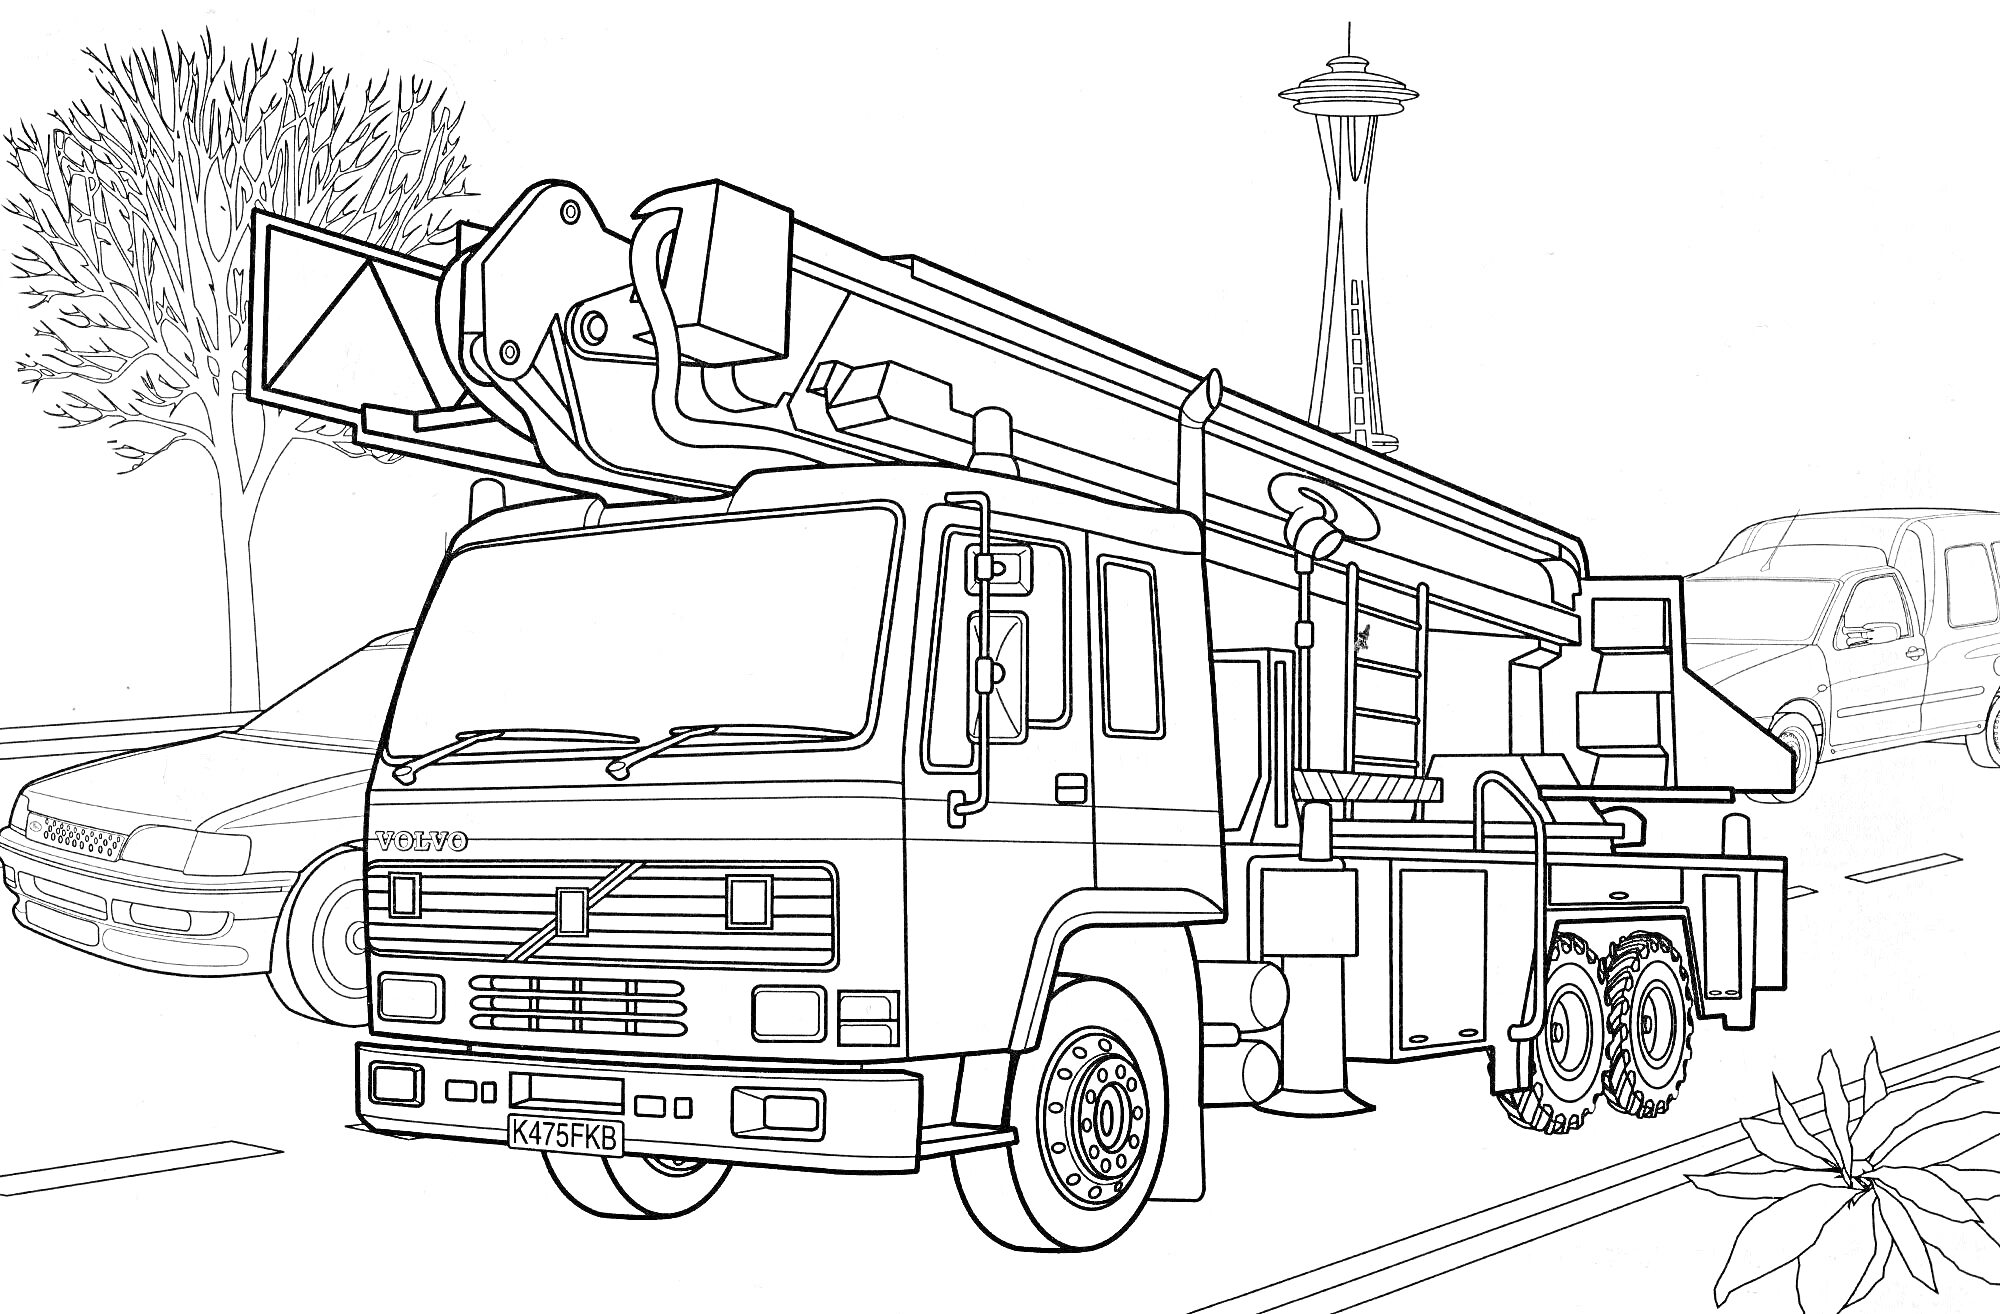 РаскраскаПожарный автомобиль с подъемной лестницей на улице с машинами, деревом и башней на заднем фоне